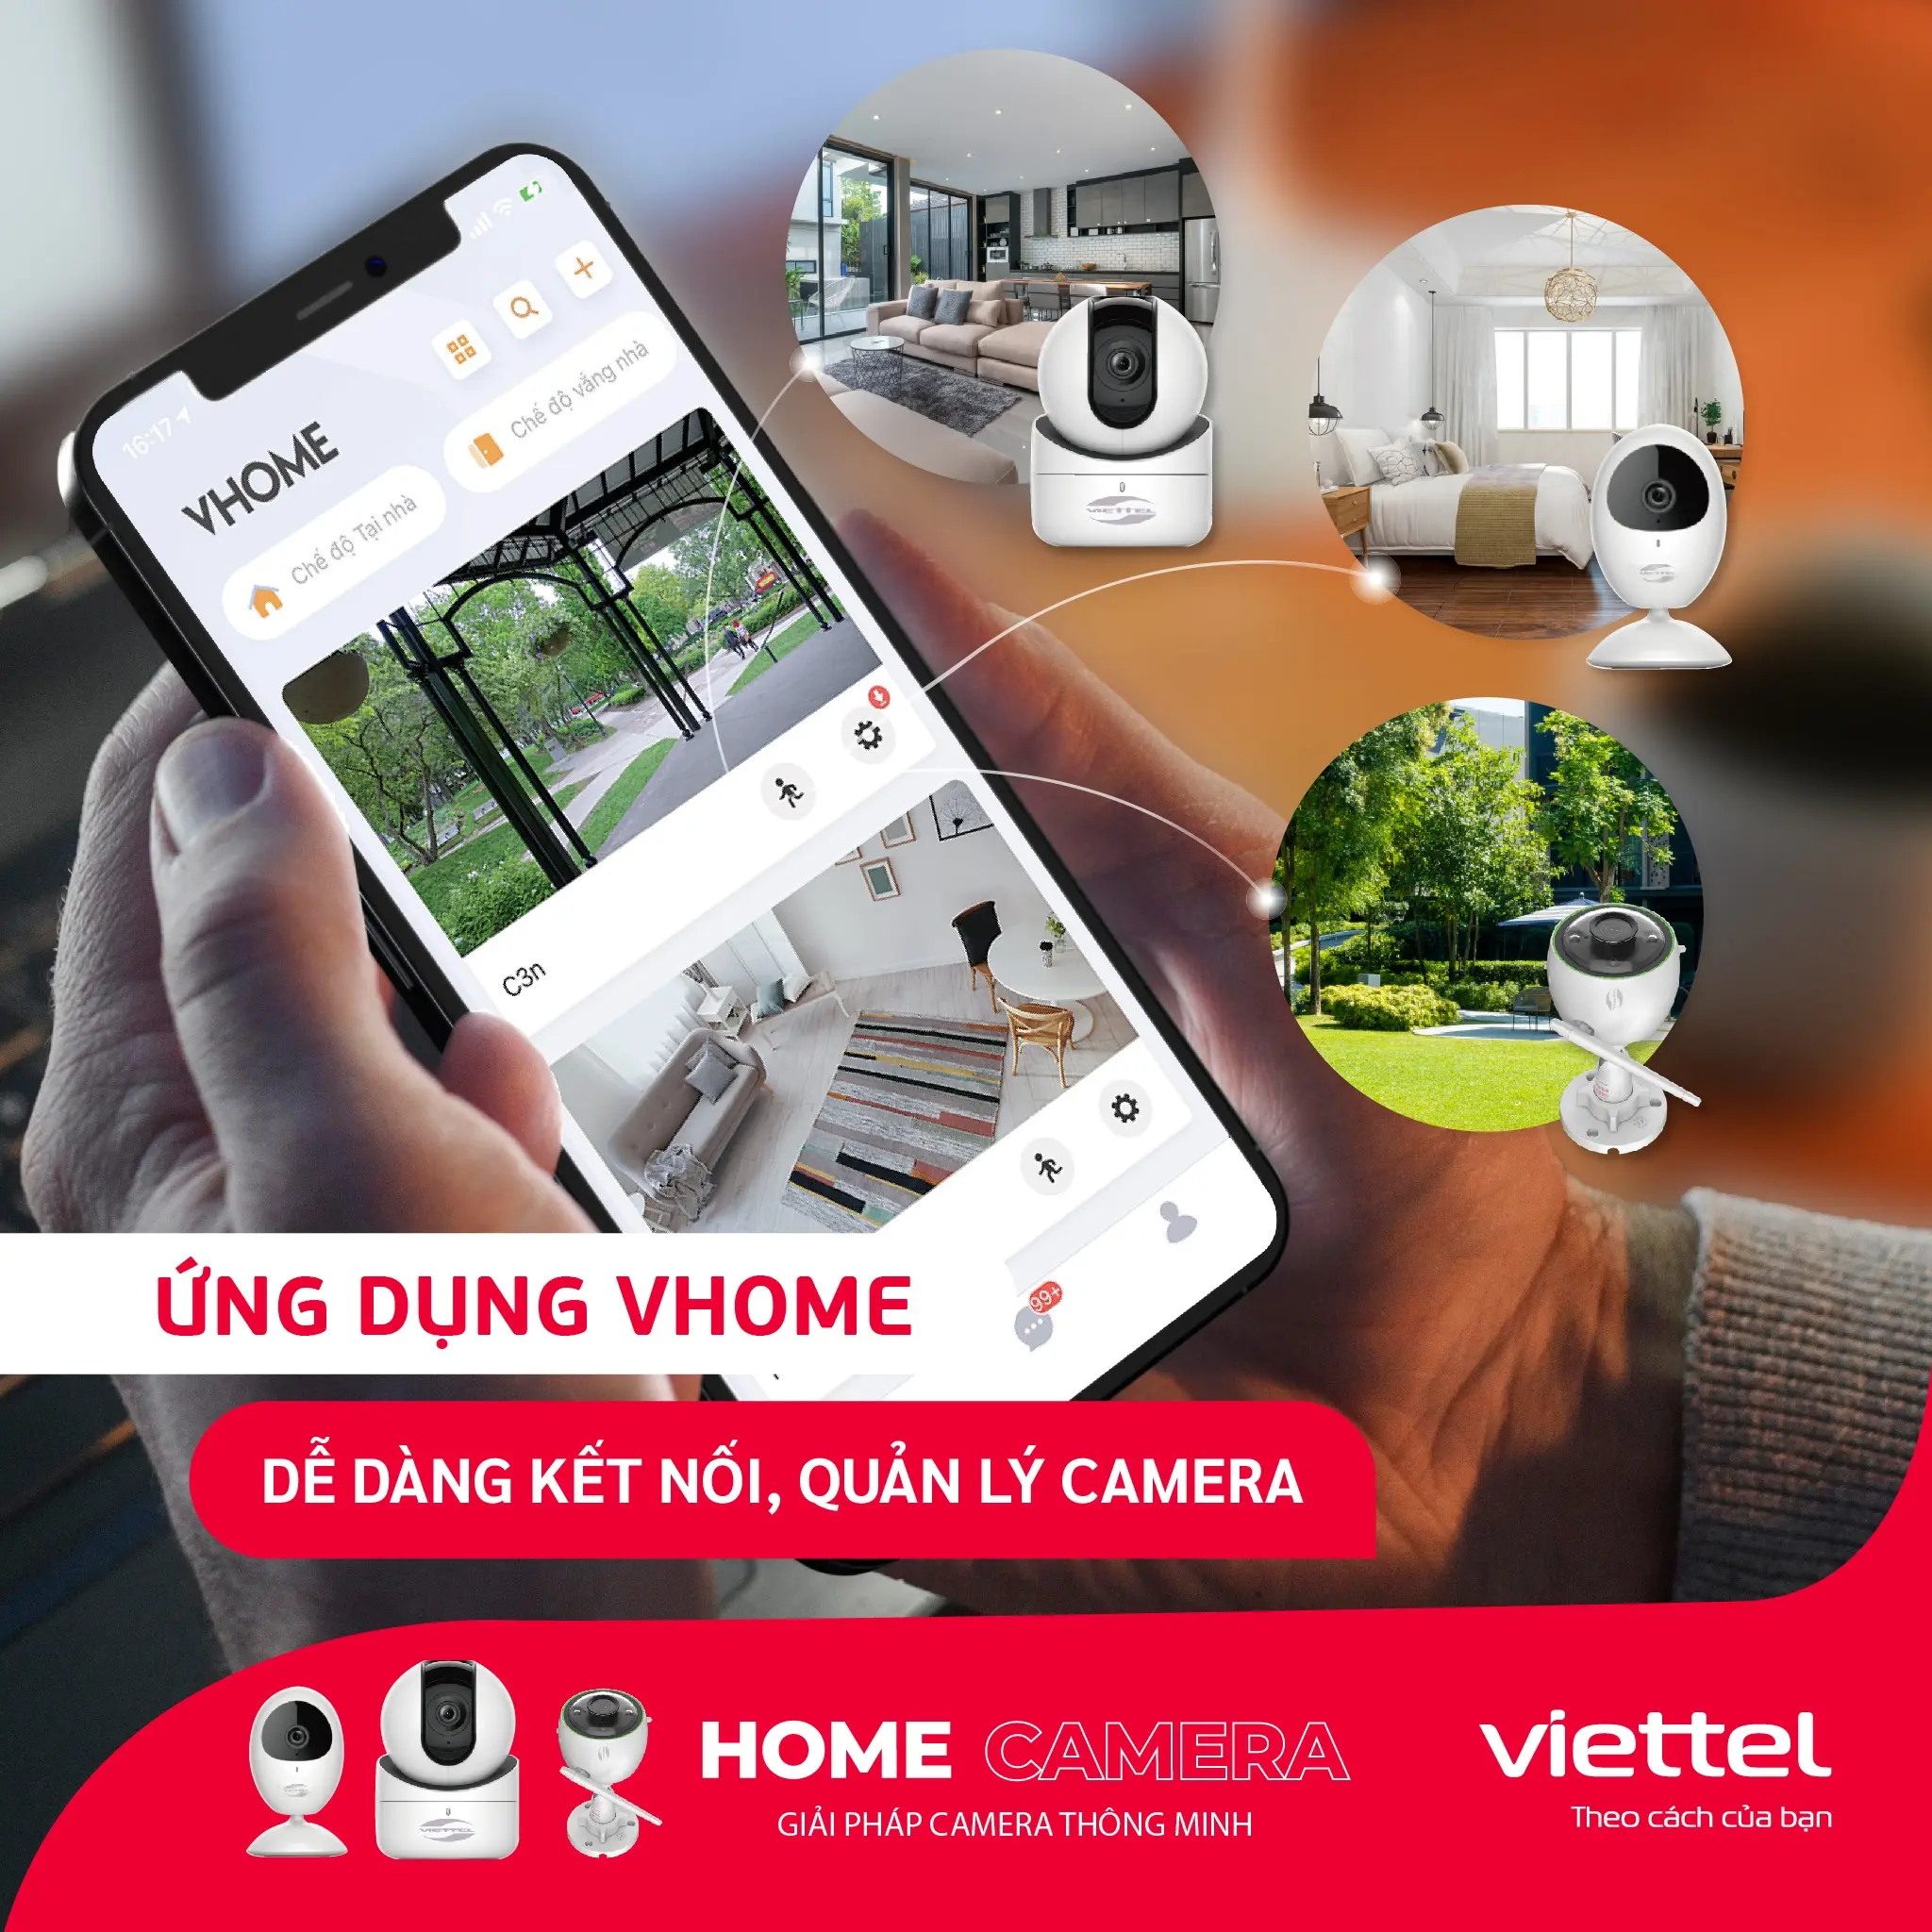 Ứng dụng vHome cài đặt camera Viettel